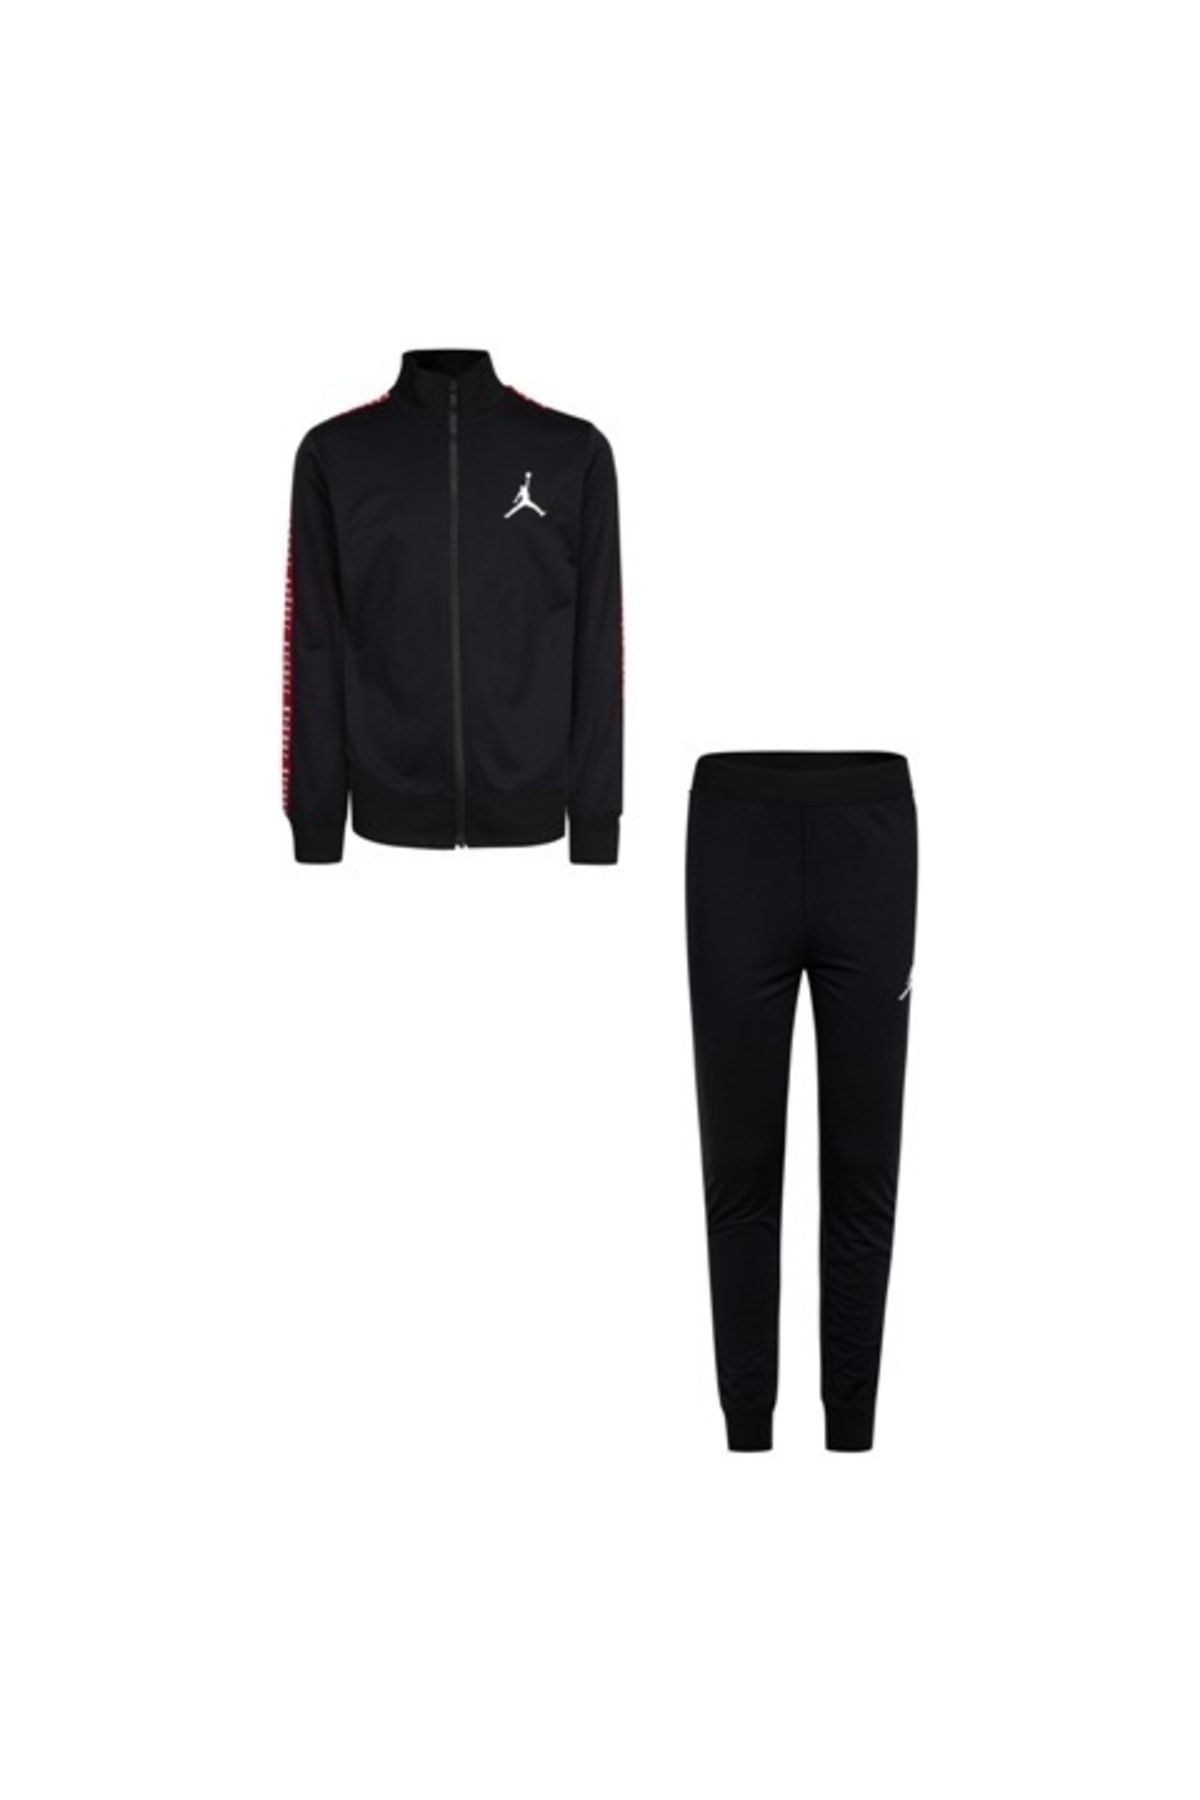 Nike Jordan Jdb Jacket And Pants Set Erkek Çocuk Eşofman Takım 95a449-023